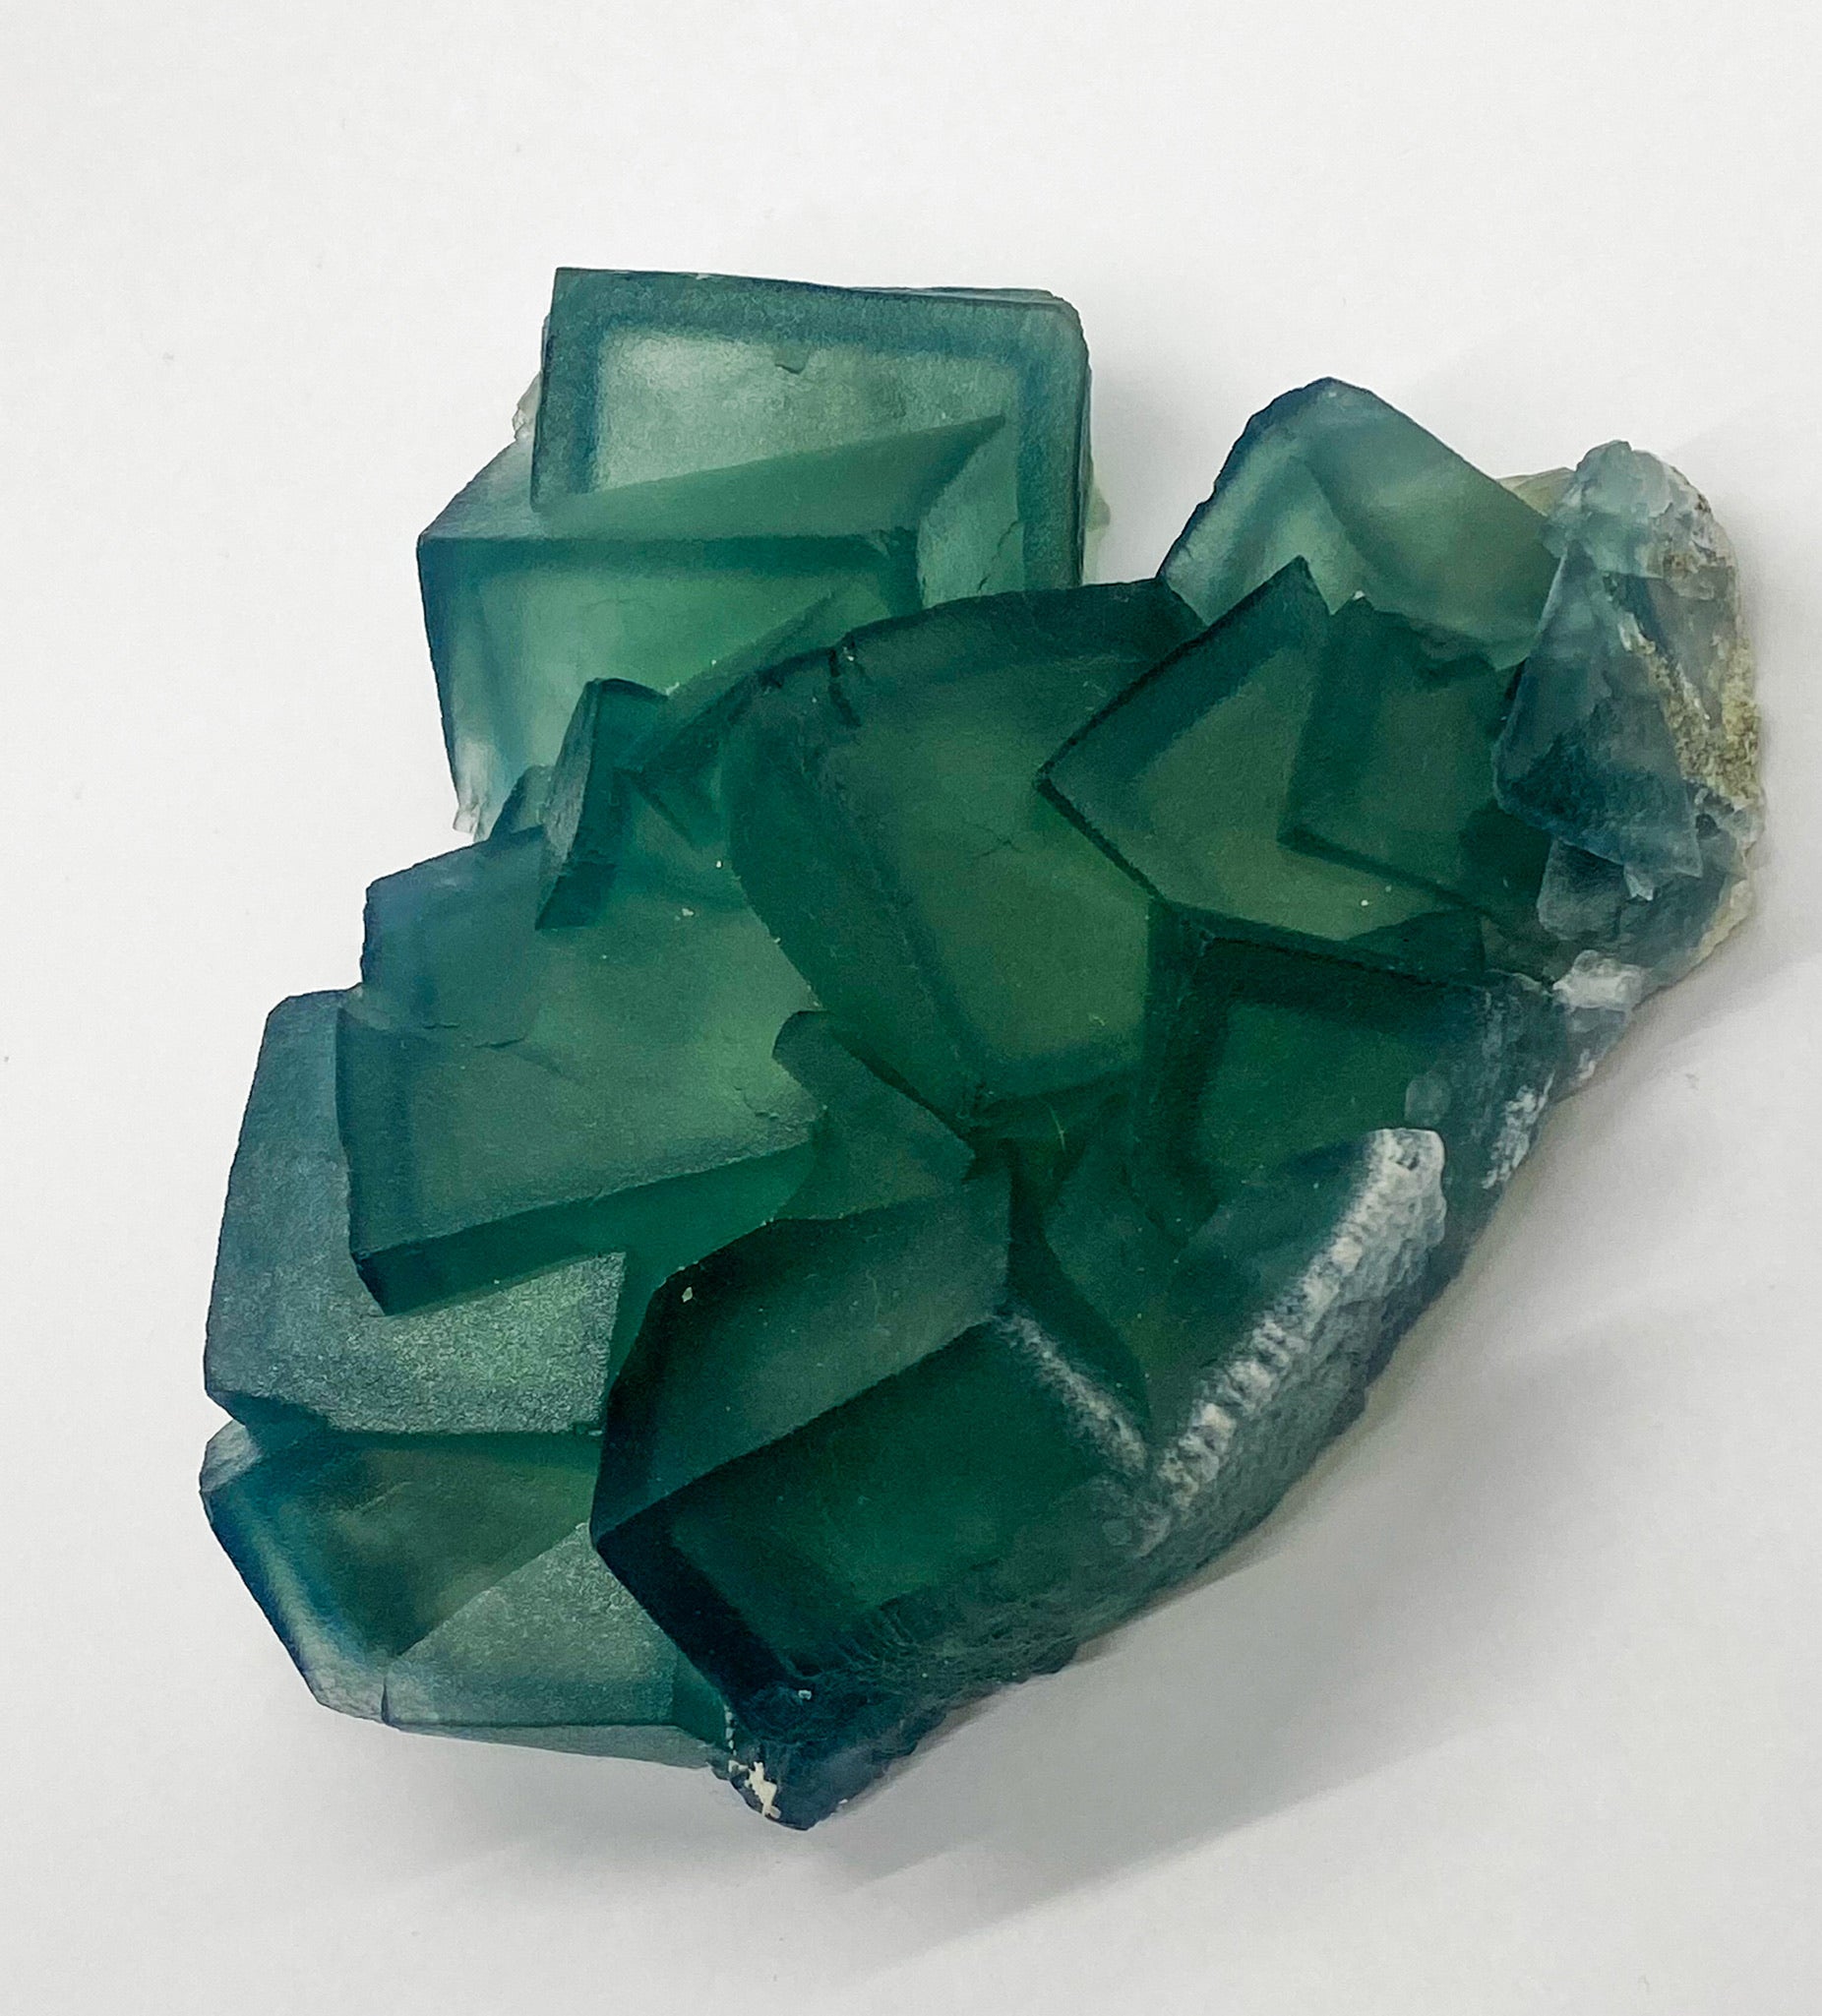 Green Cube Fluorite